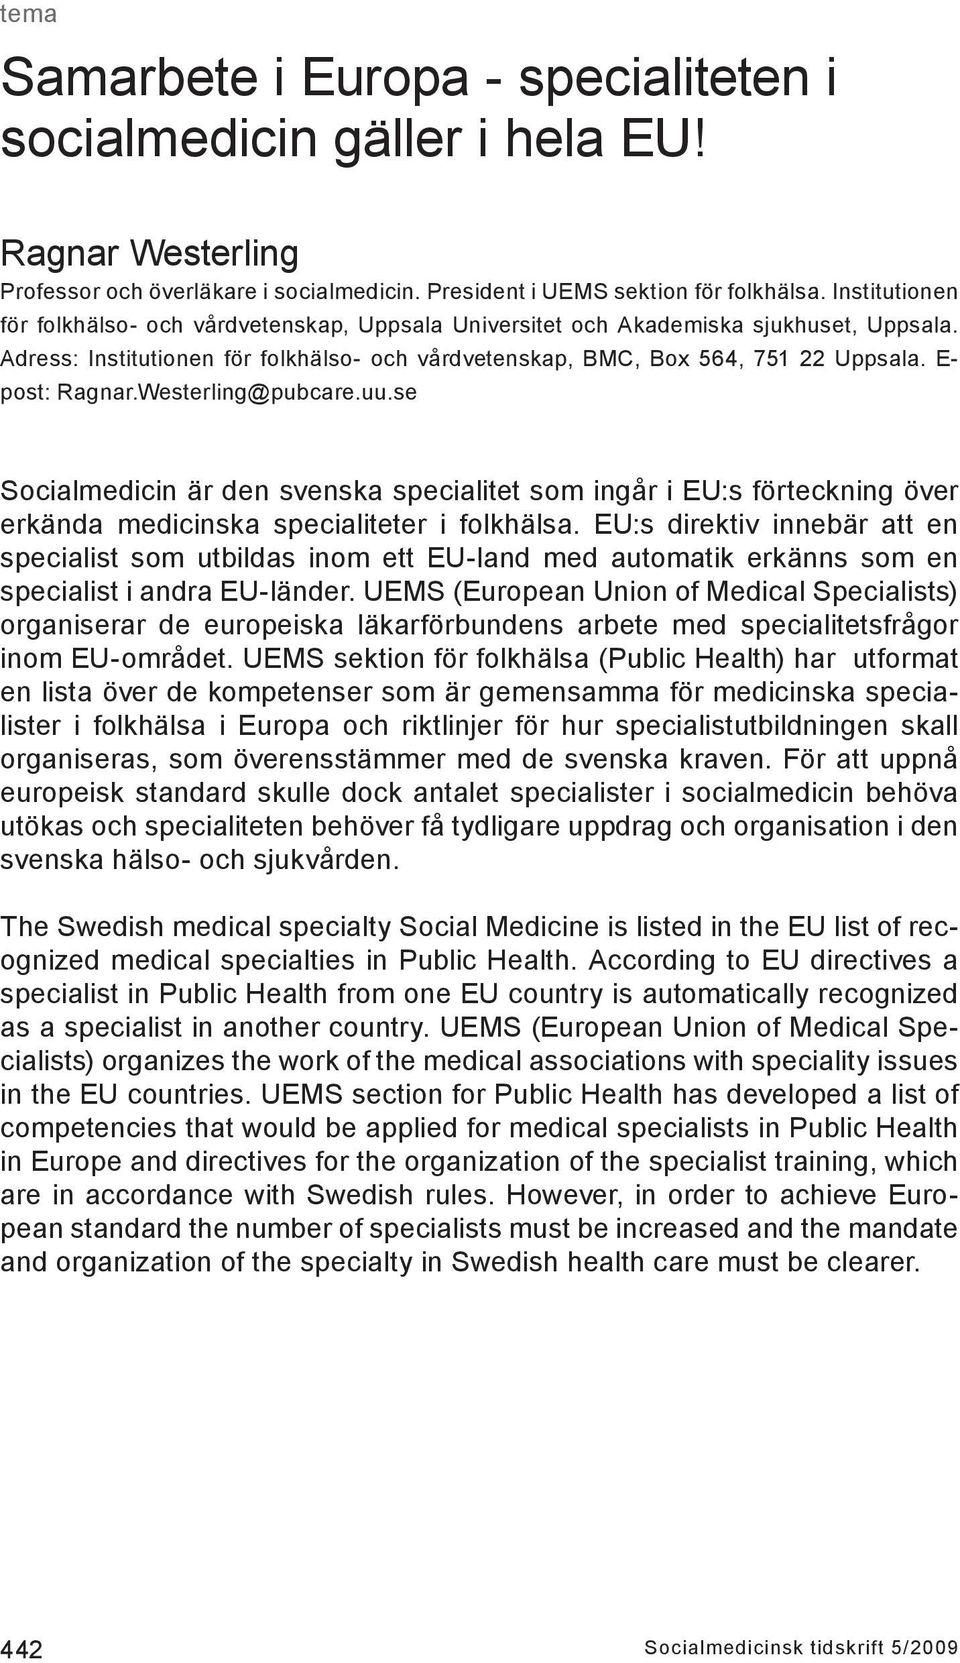 E- post: Ragnar.Westerling@pubcare.uu.se Socialmedicin är den svenska specialitet som ingår i EU:s förteckning över erkända medicinska specialiteter i folkhälsa.